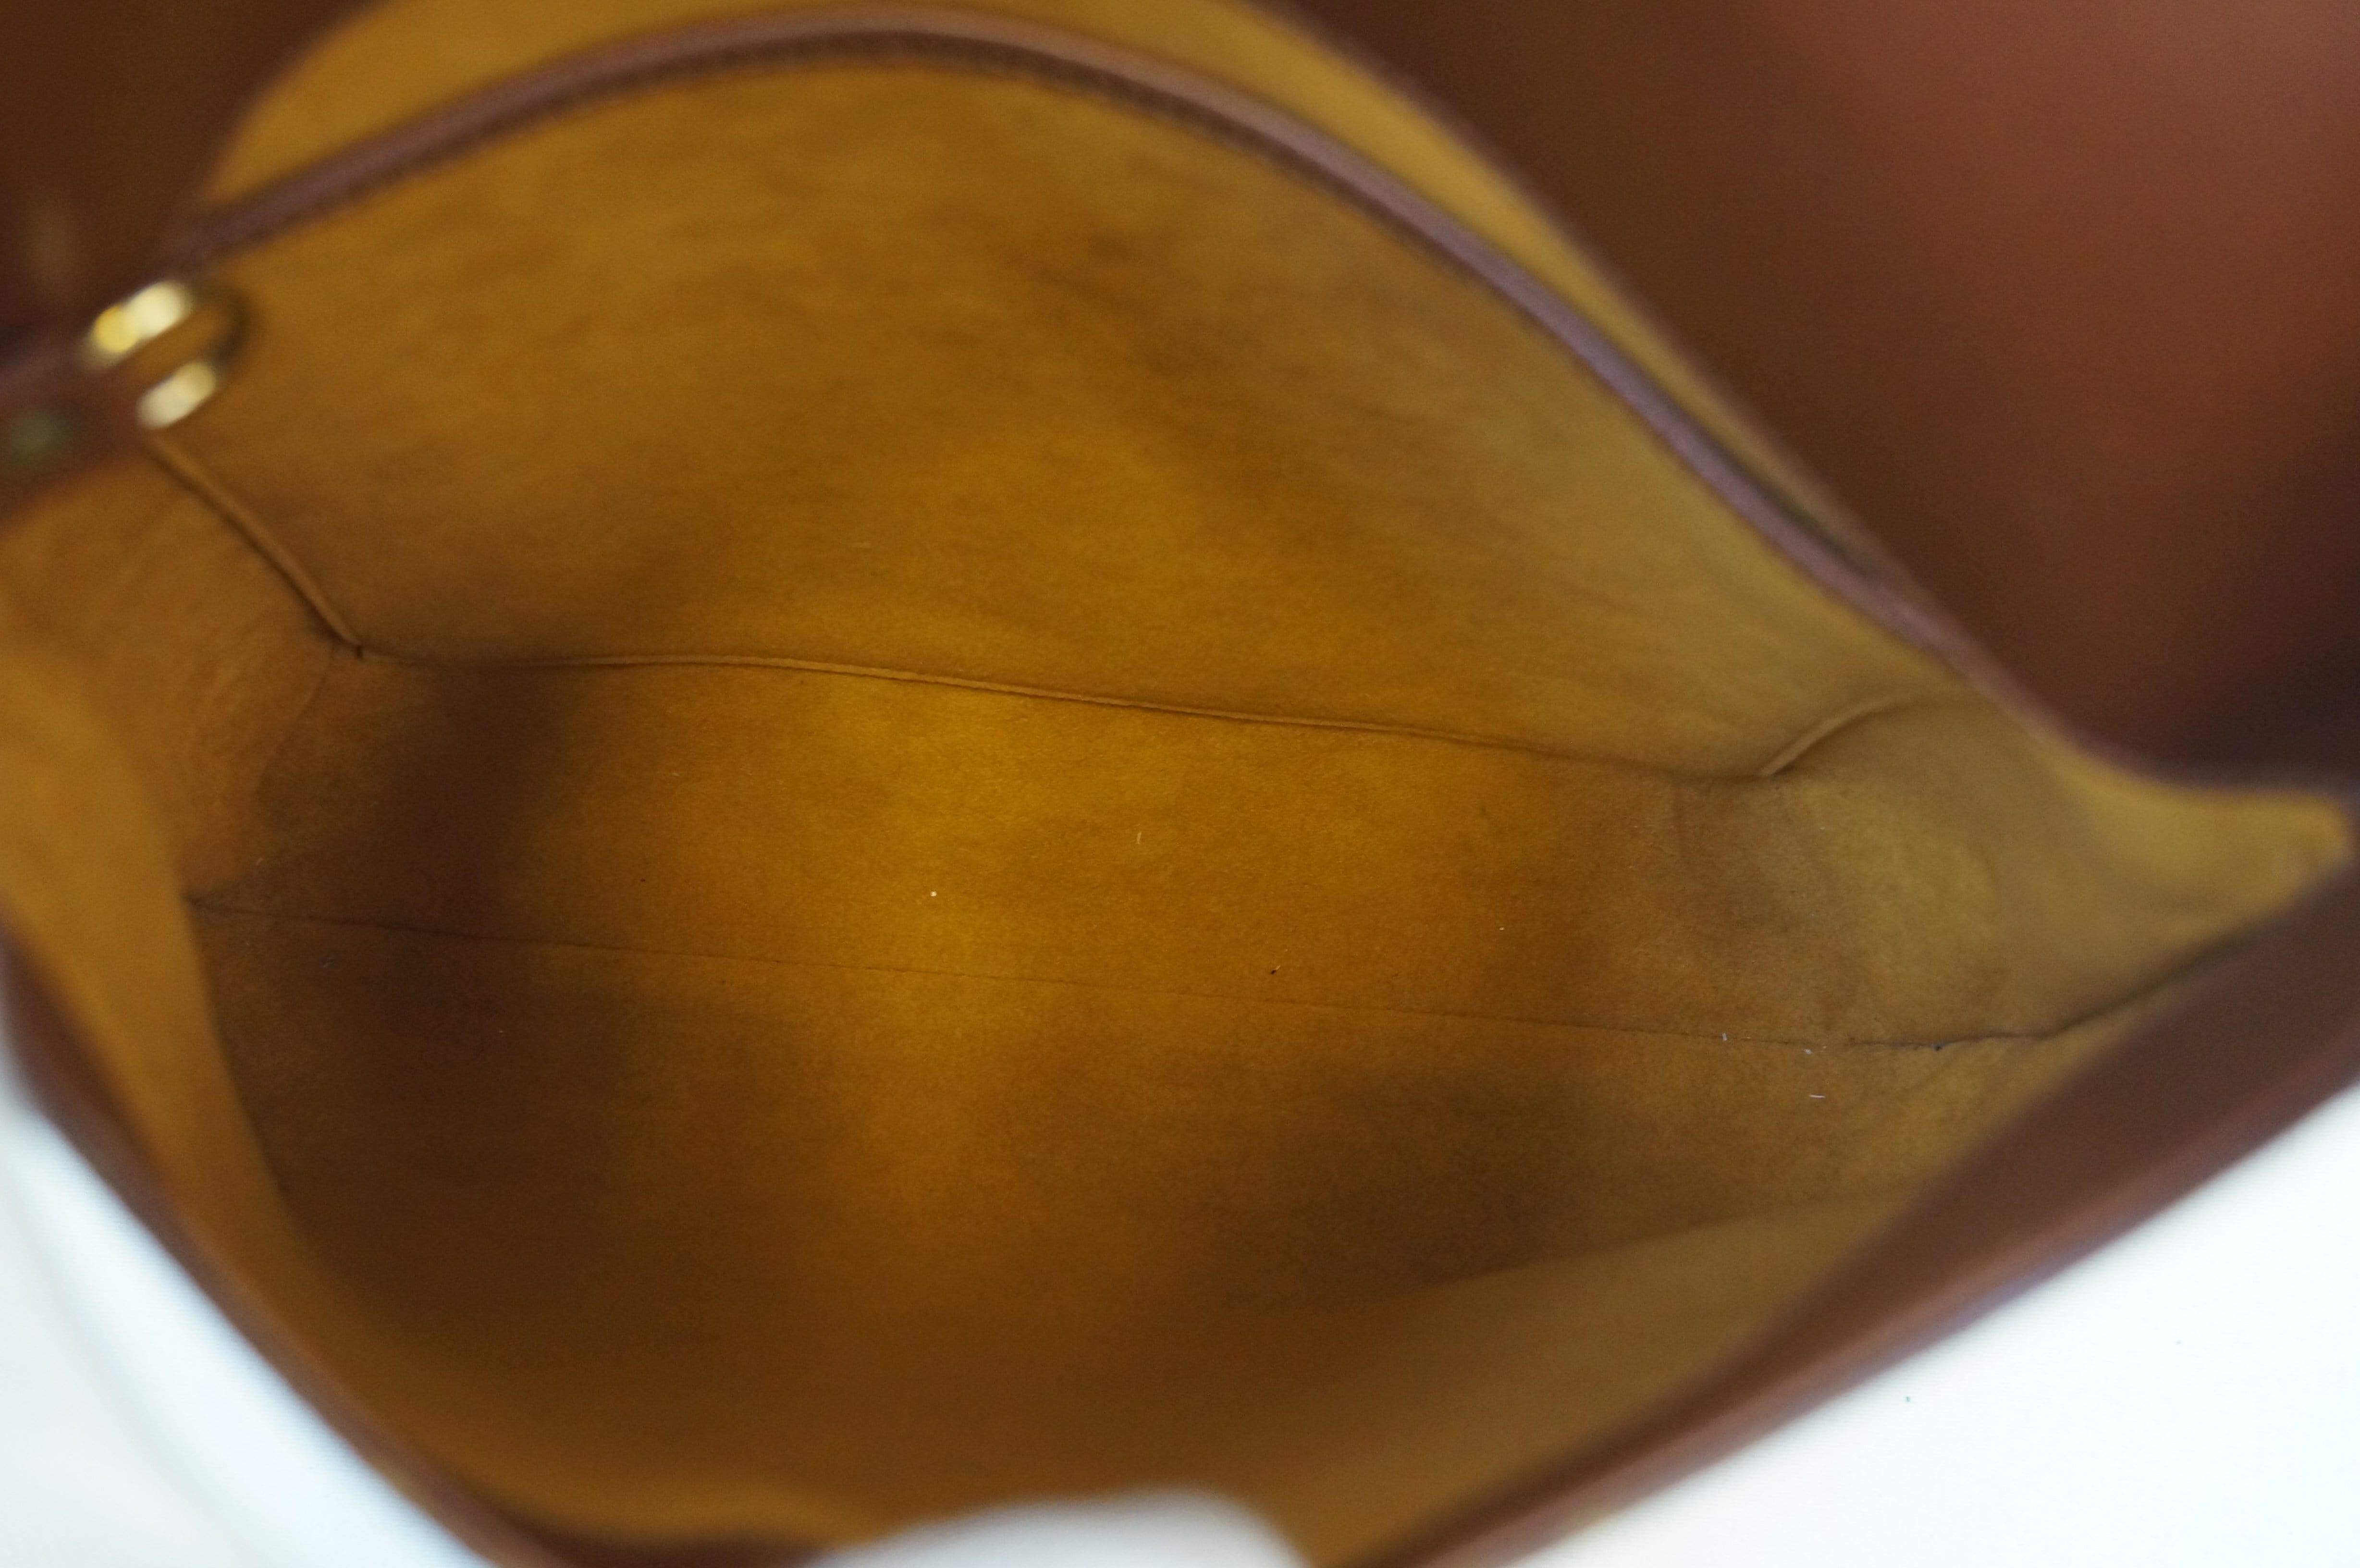 Used Brown Louis Vuitton Authentic Musette Salsa GM Monogram Canvas  Shoulder Bag Houston,TX